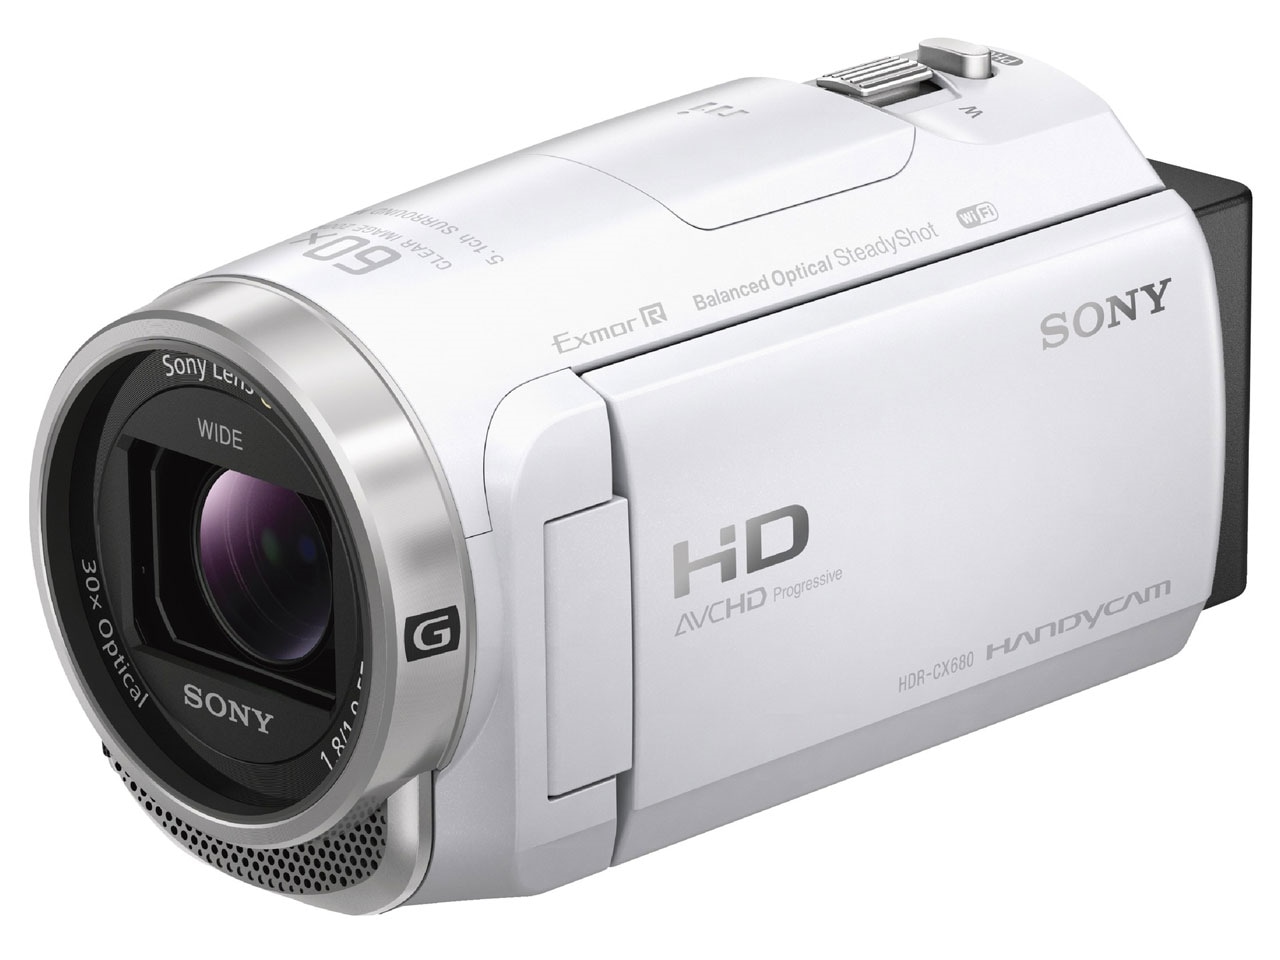 ソニービデオカメラ「HDR-CX680」の魅力を詳しく解説！同社製品との 